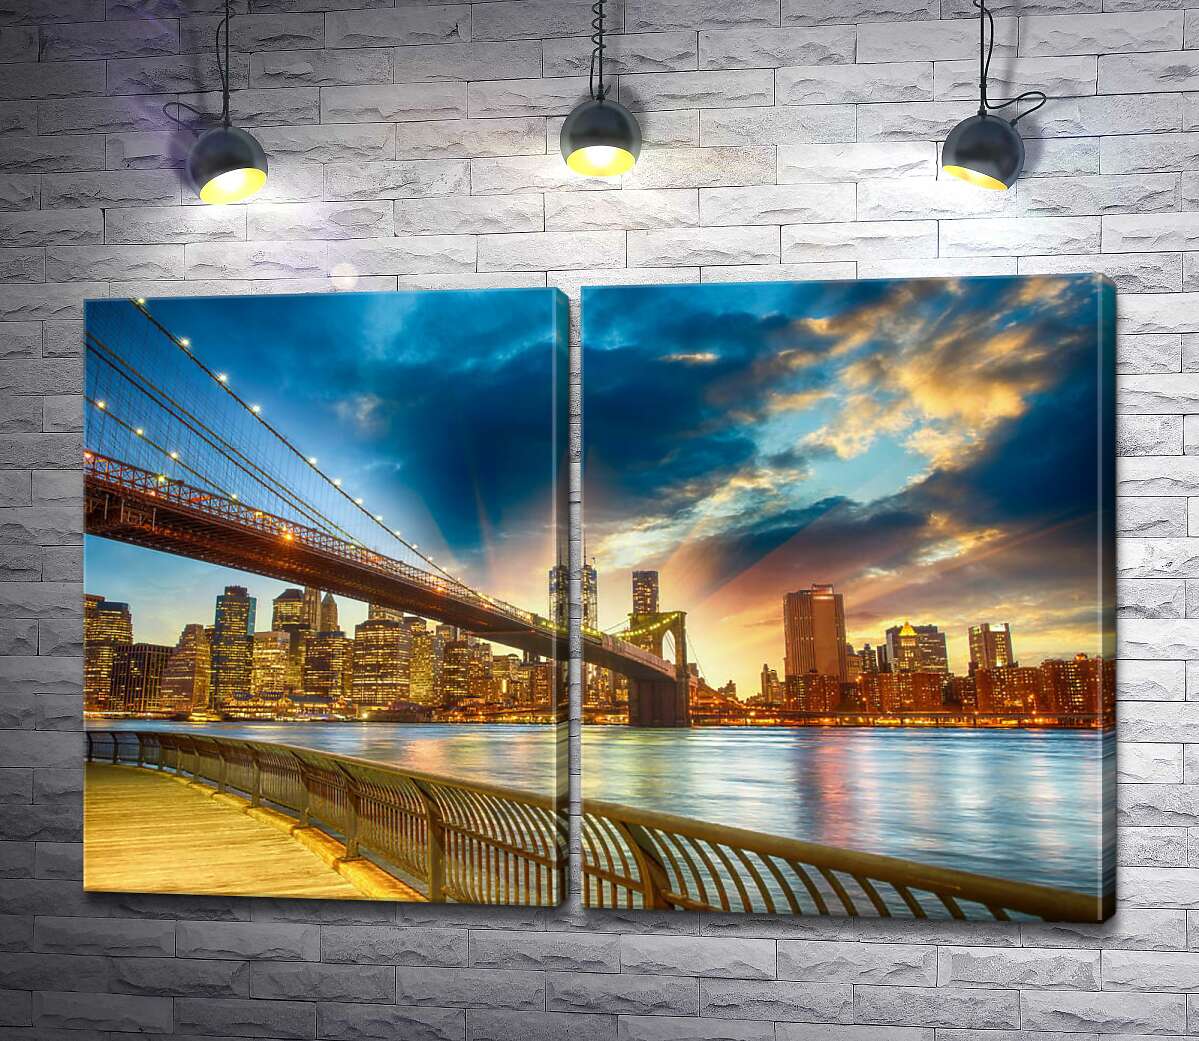 модульна картина Бруклінський міст (Brooklyn Bridge) веде до багатолюдного мегаполісу